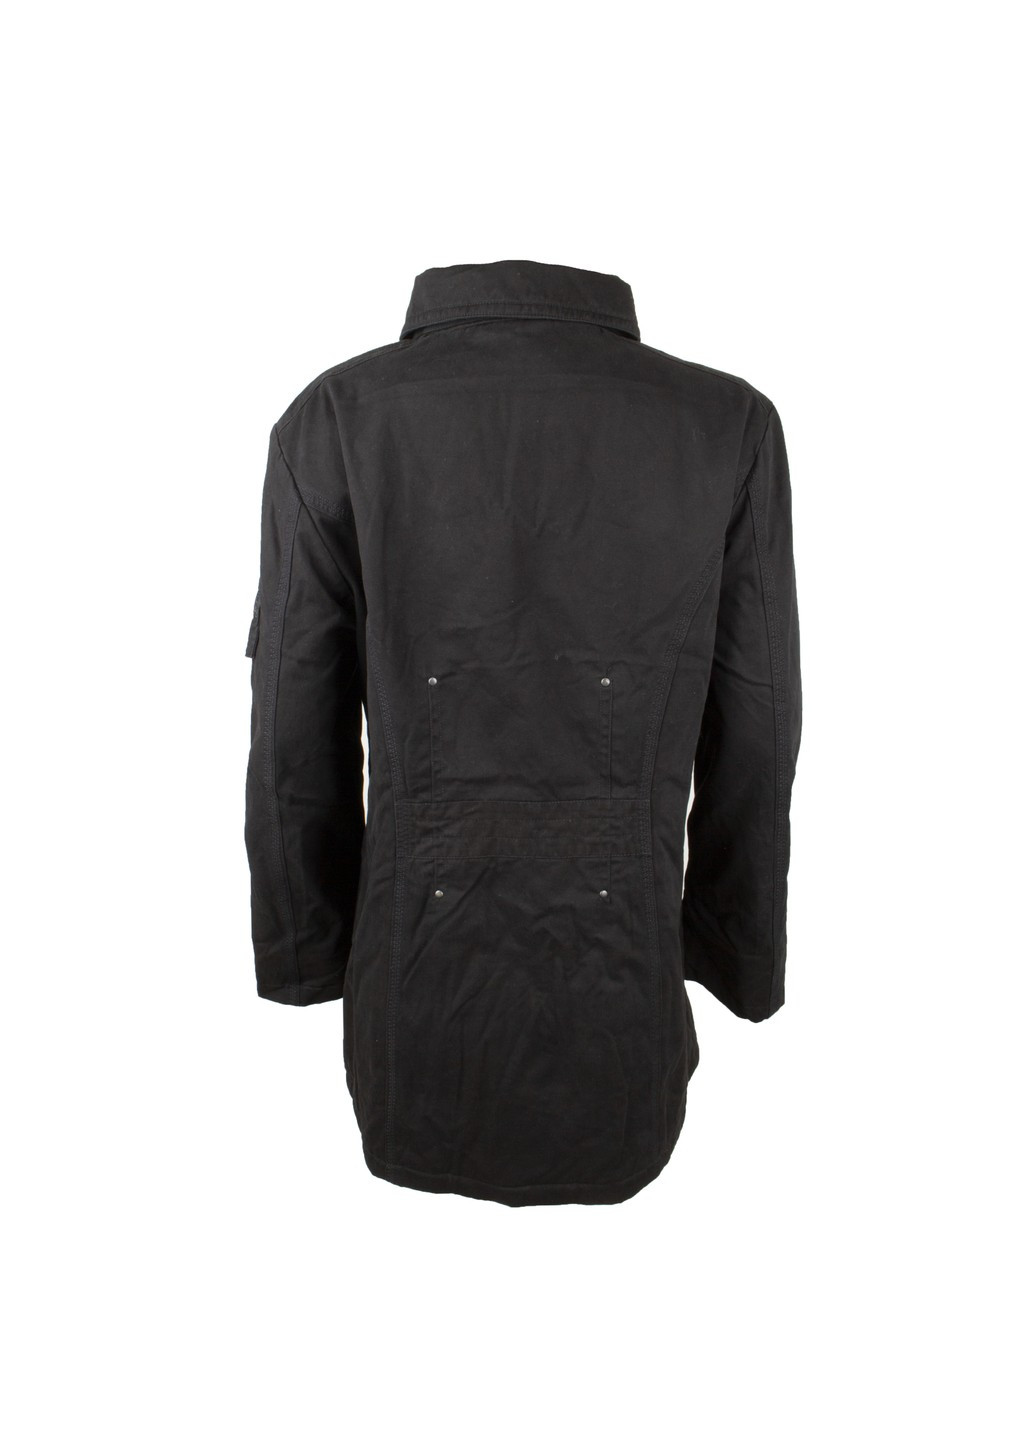 Черная куртка женская clothing Mox